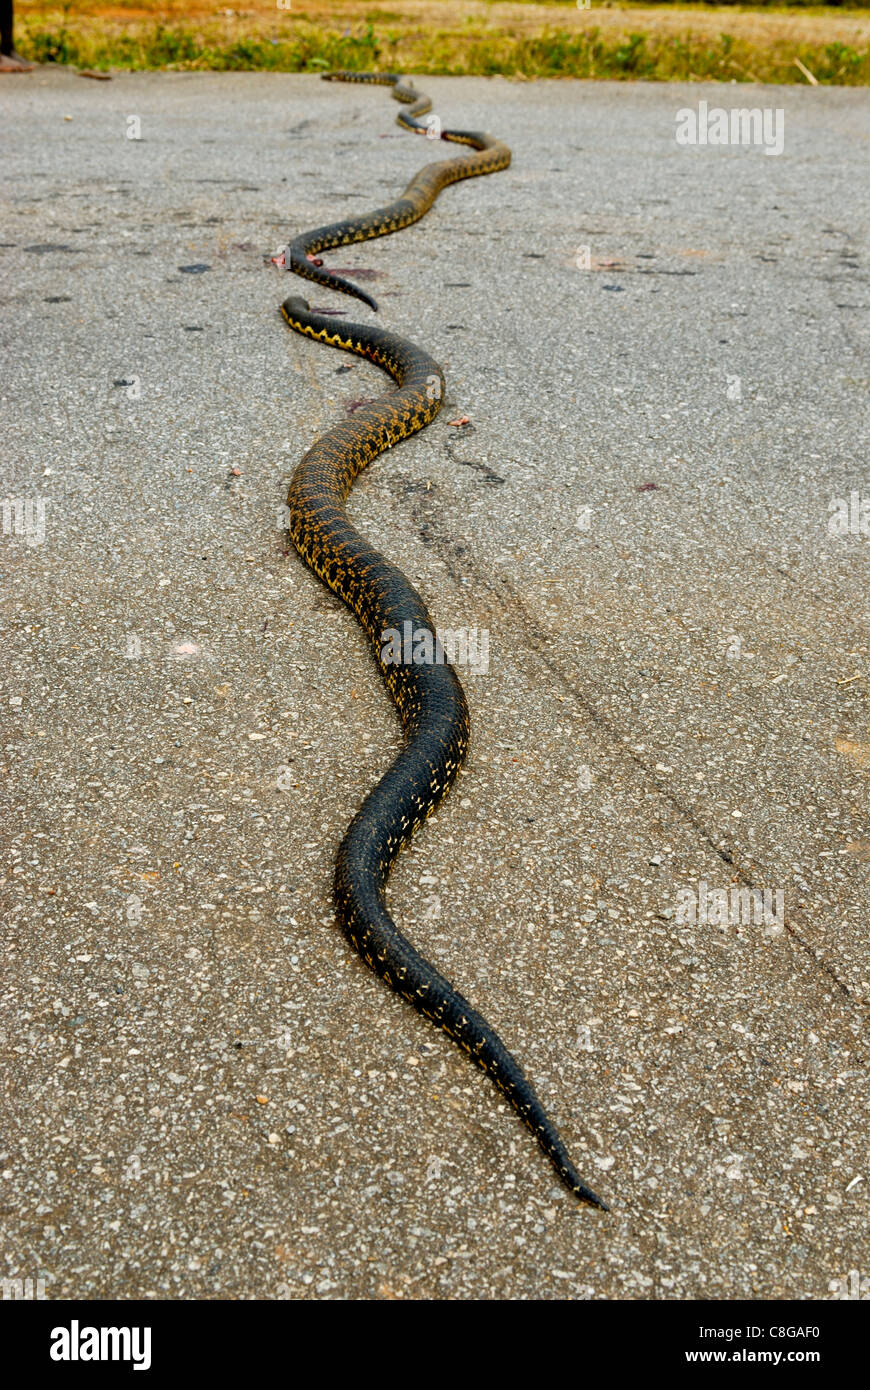 Dead pythons lying on a street, Manakara, Madagascar Stock Photo